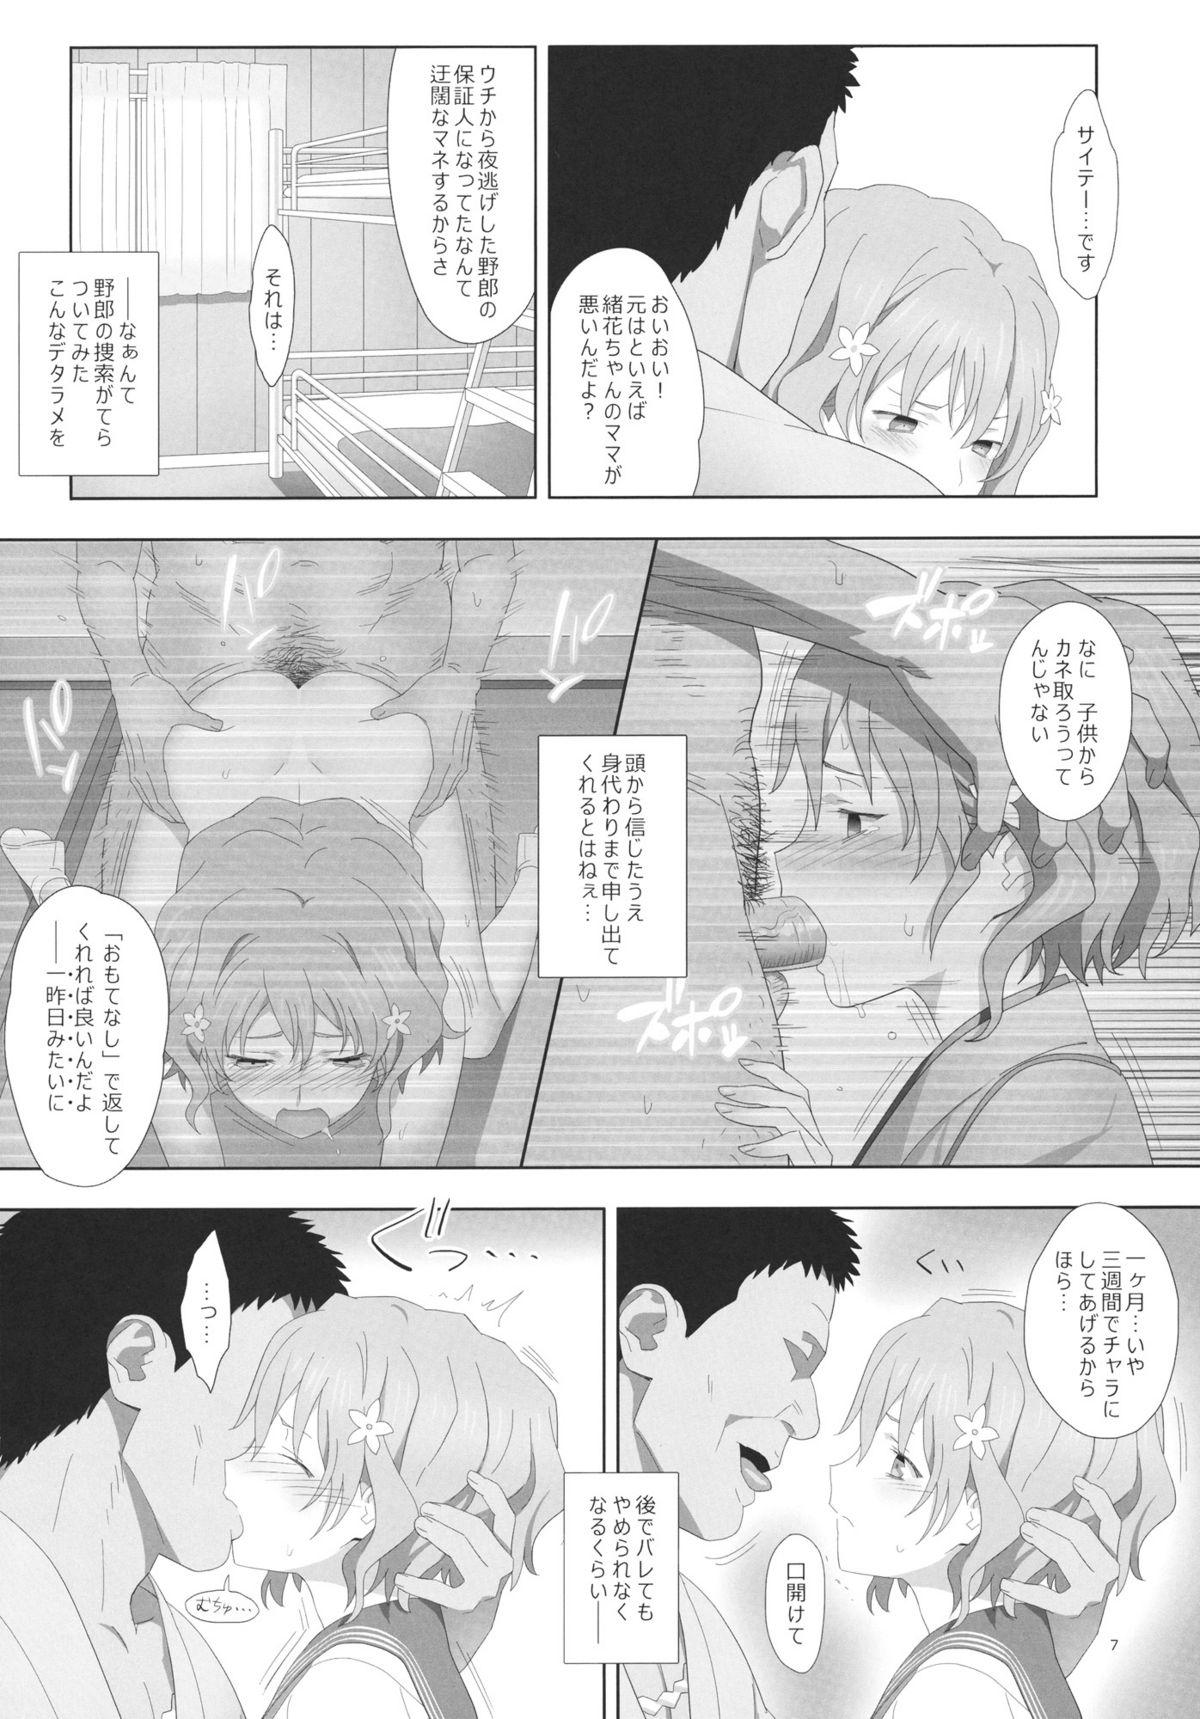 Screaming Natsu, Ryokan, Shakkintori. - Hanasaku iroha Love Making - Page 6